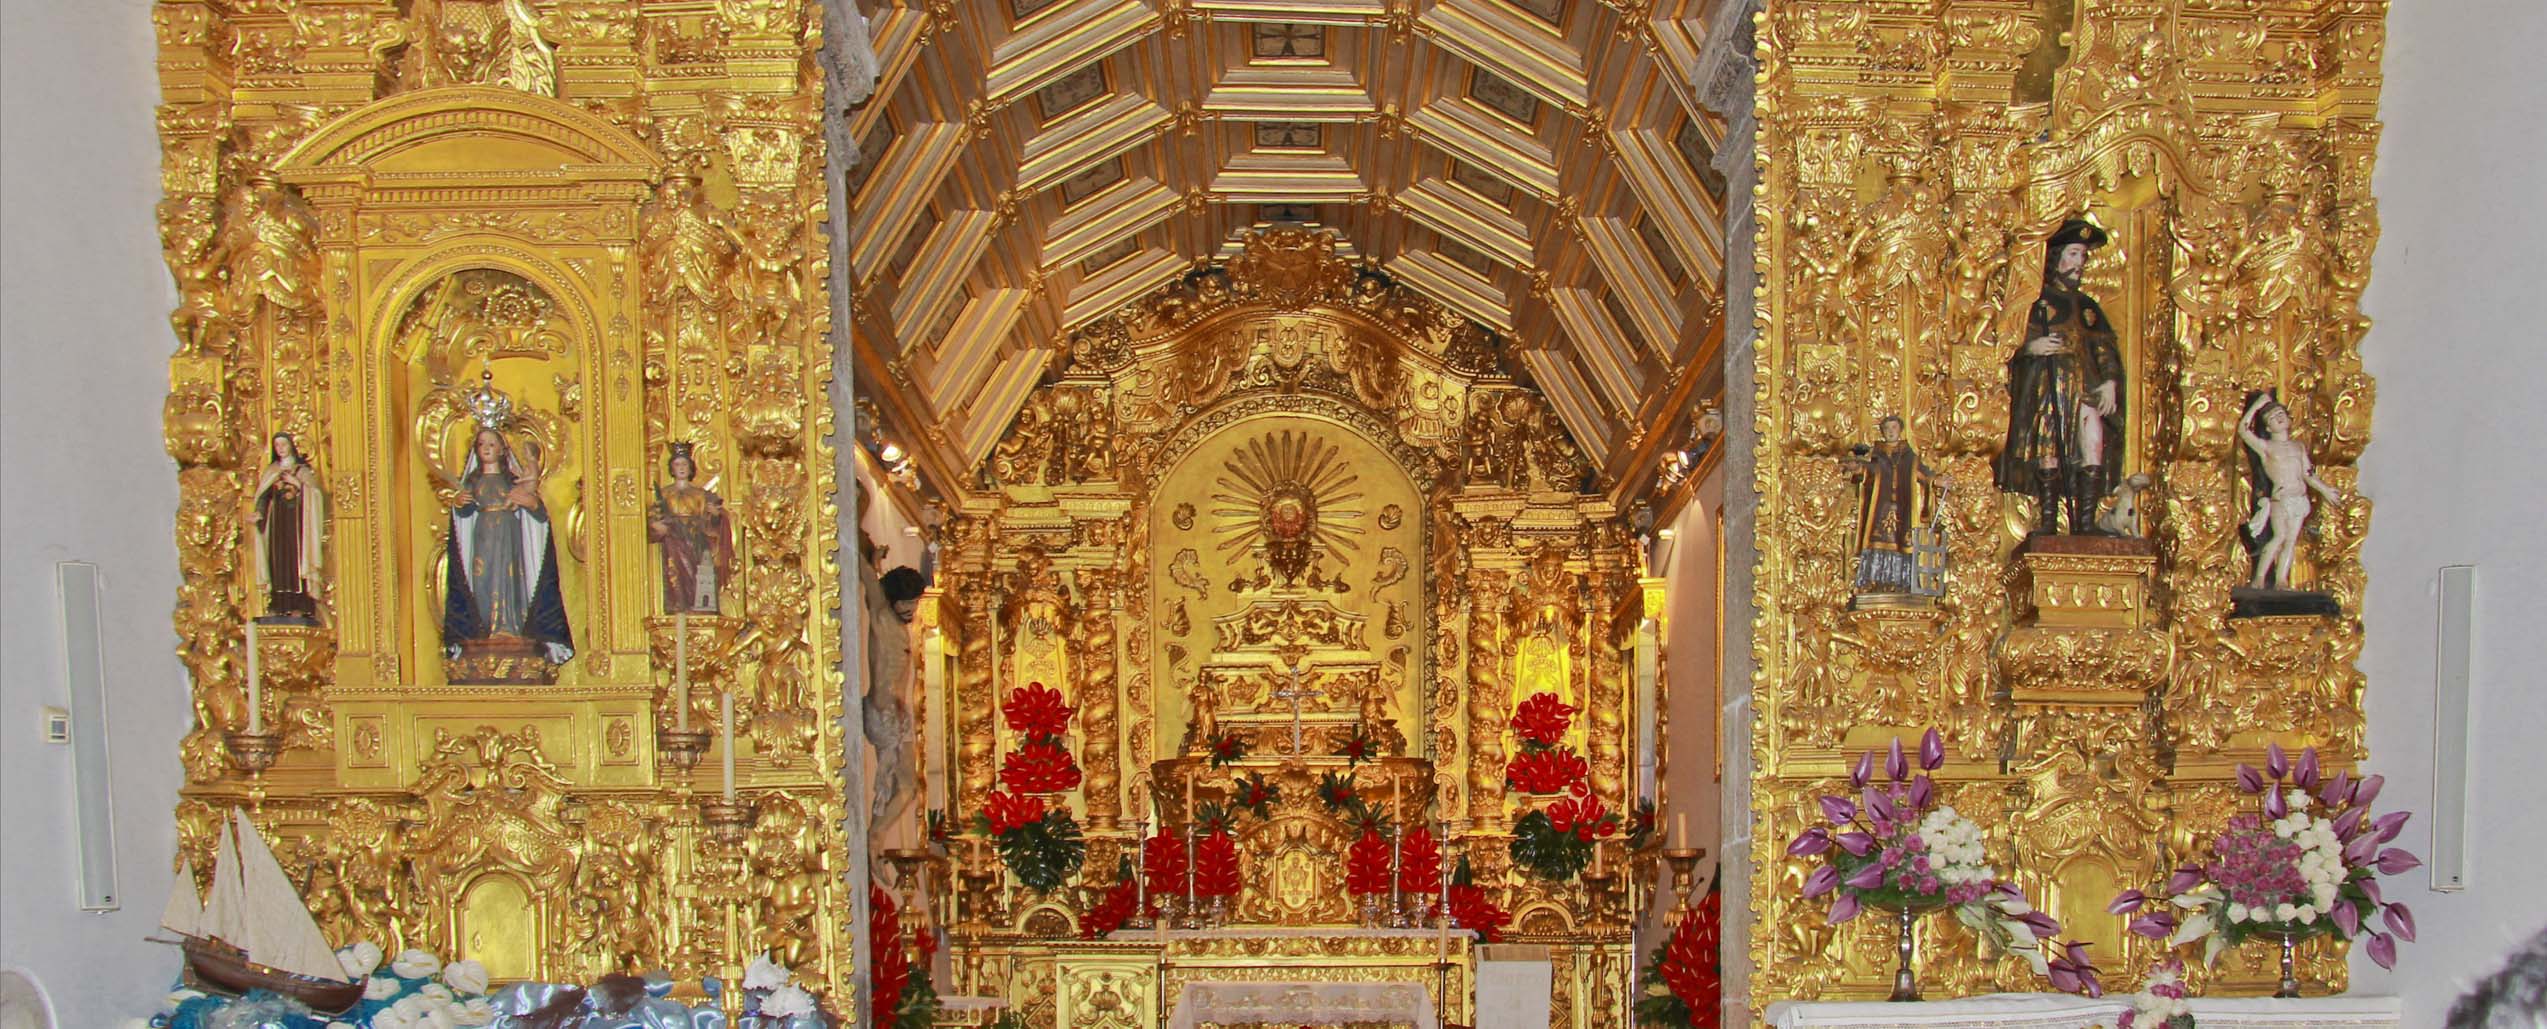 fotos do santuário-vitrais e altares